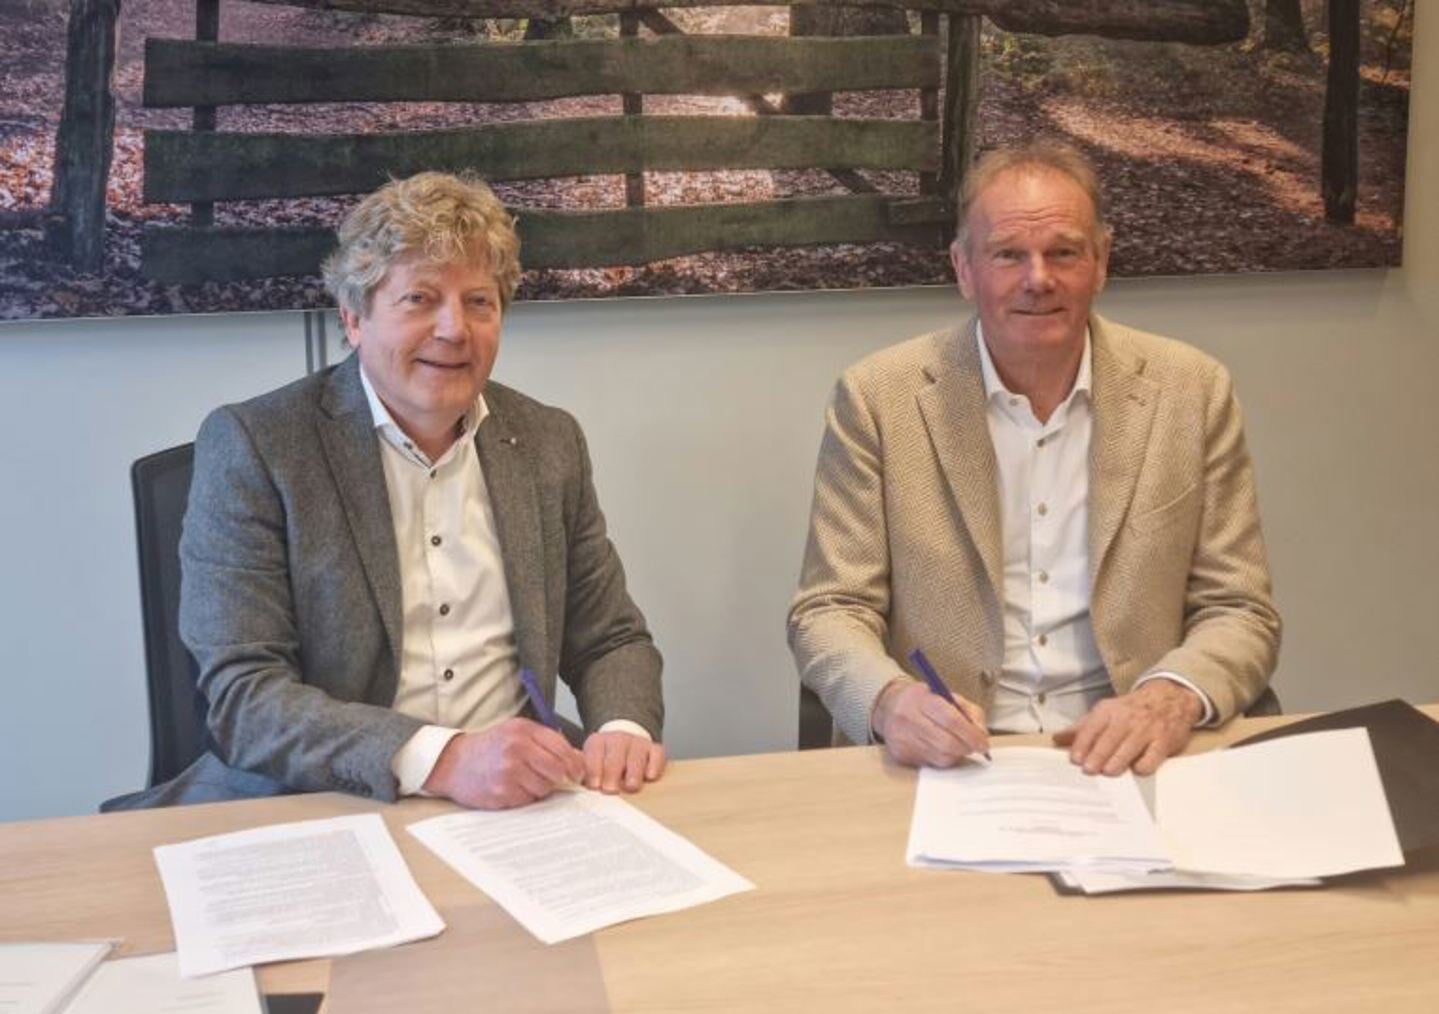 Ondertekening Valderse III door wethouder Vedder (links) en projectontwikkelaar Van Kooten